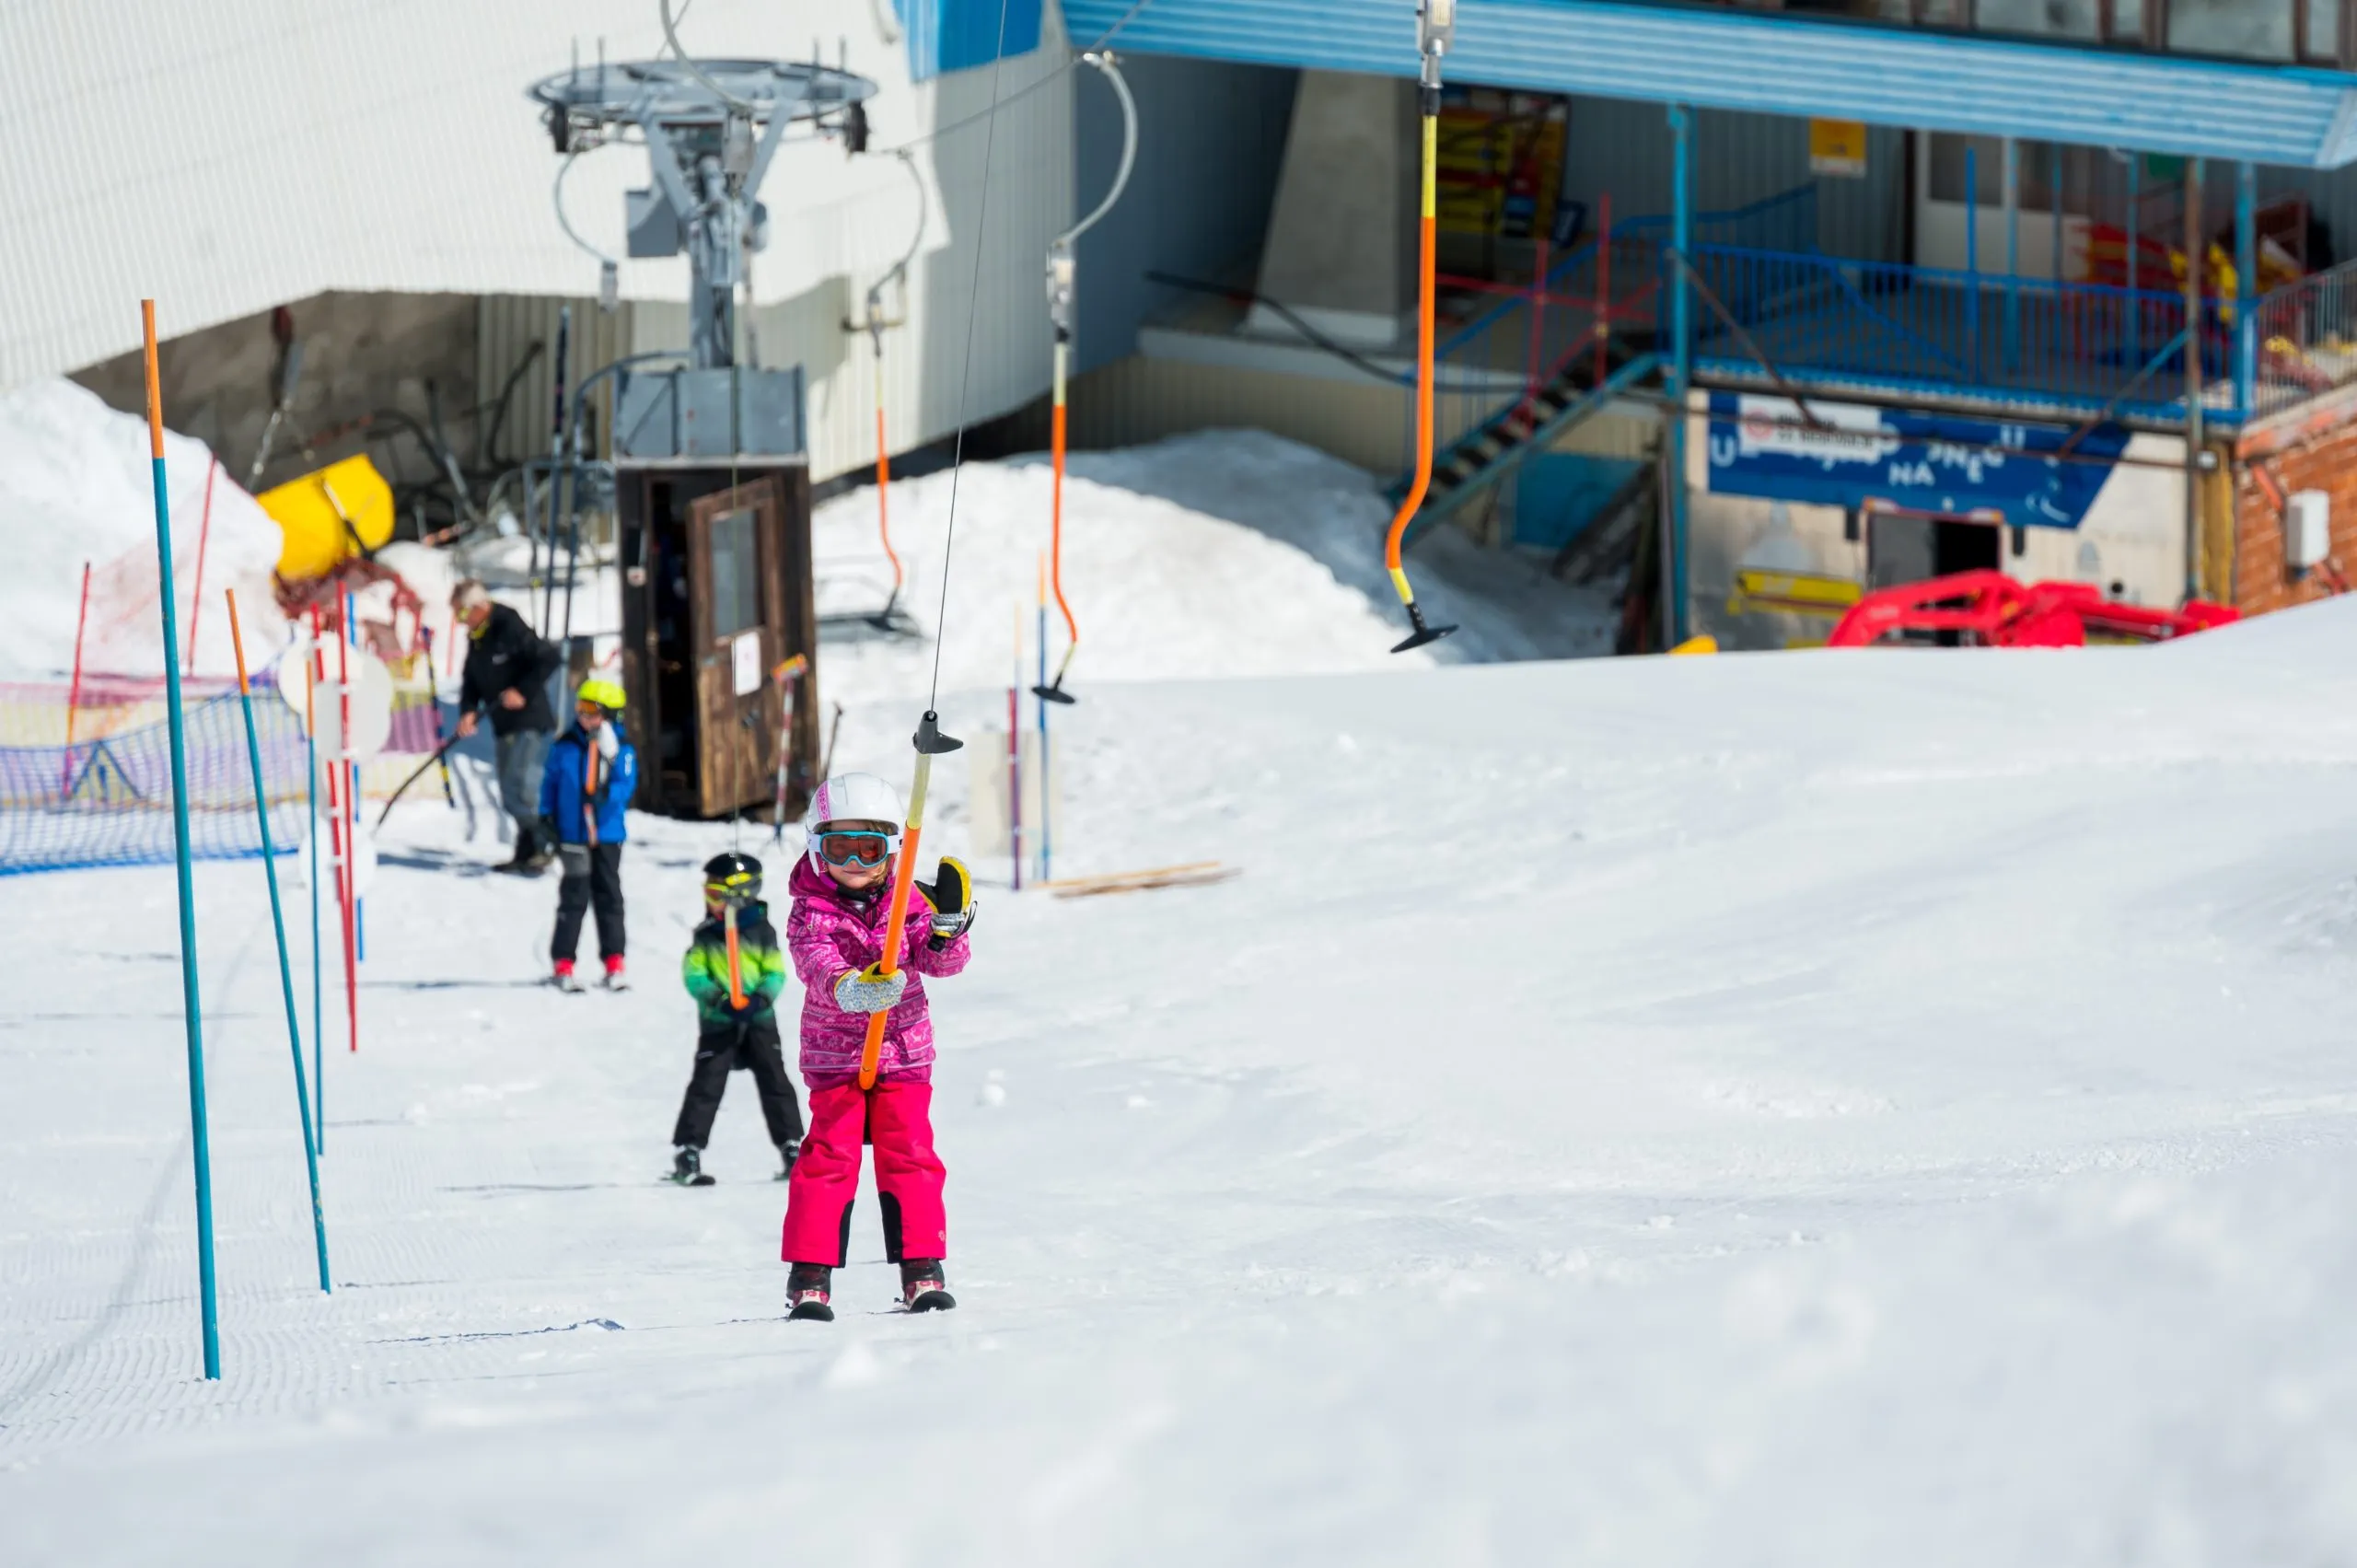 Bambini che sciano nella stazione sciistica di Kanin